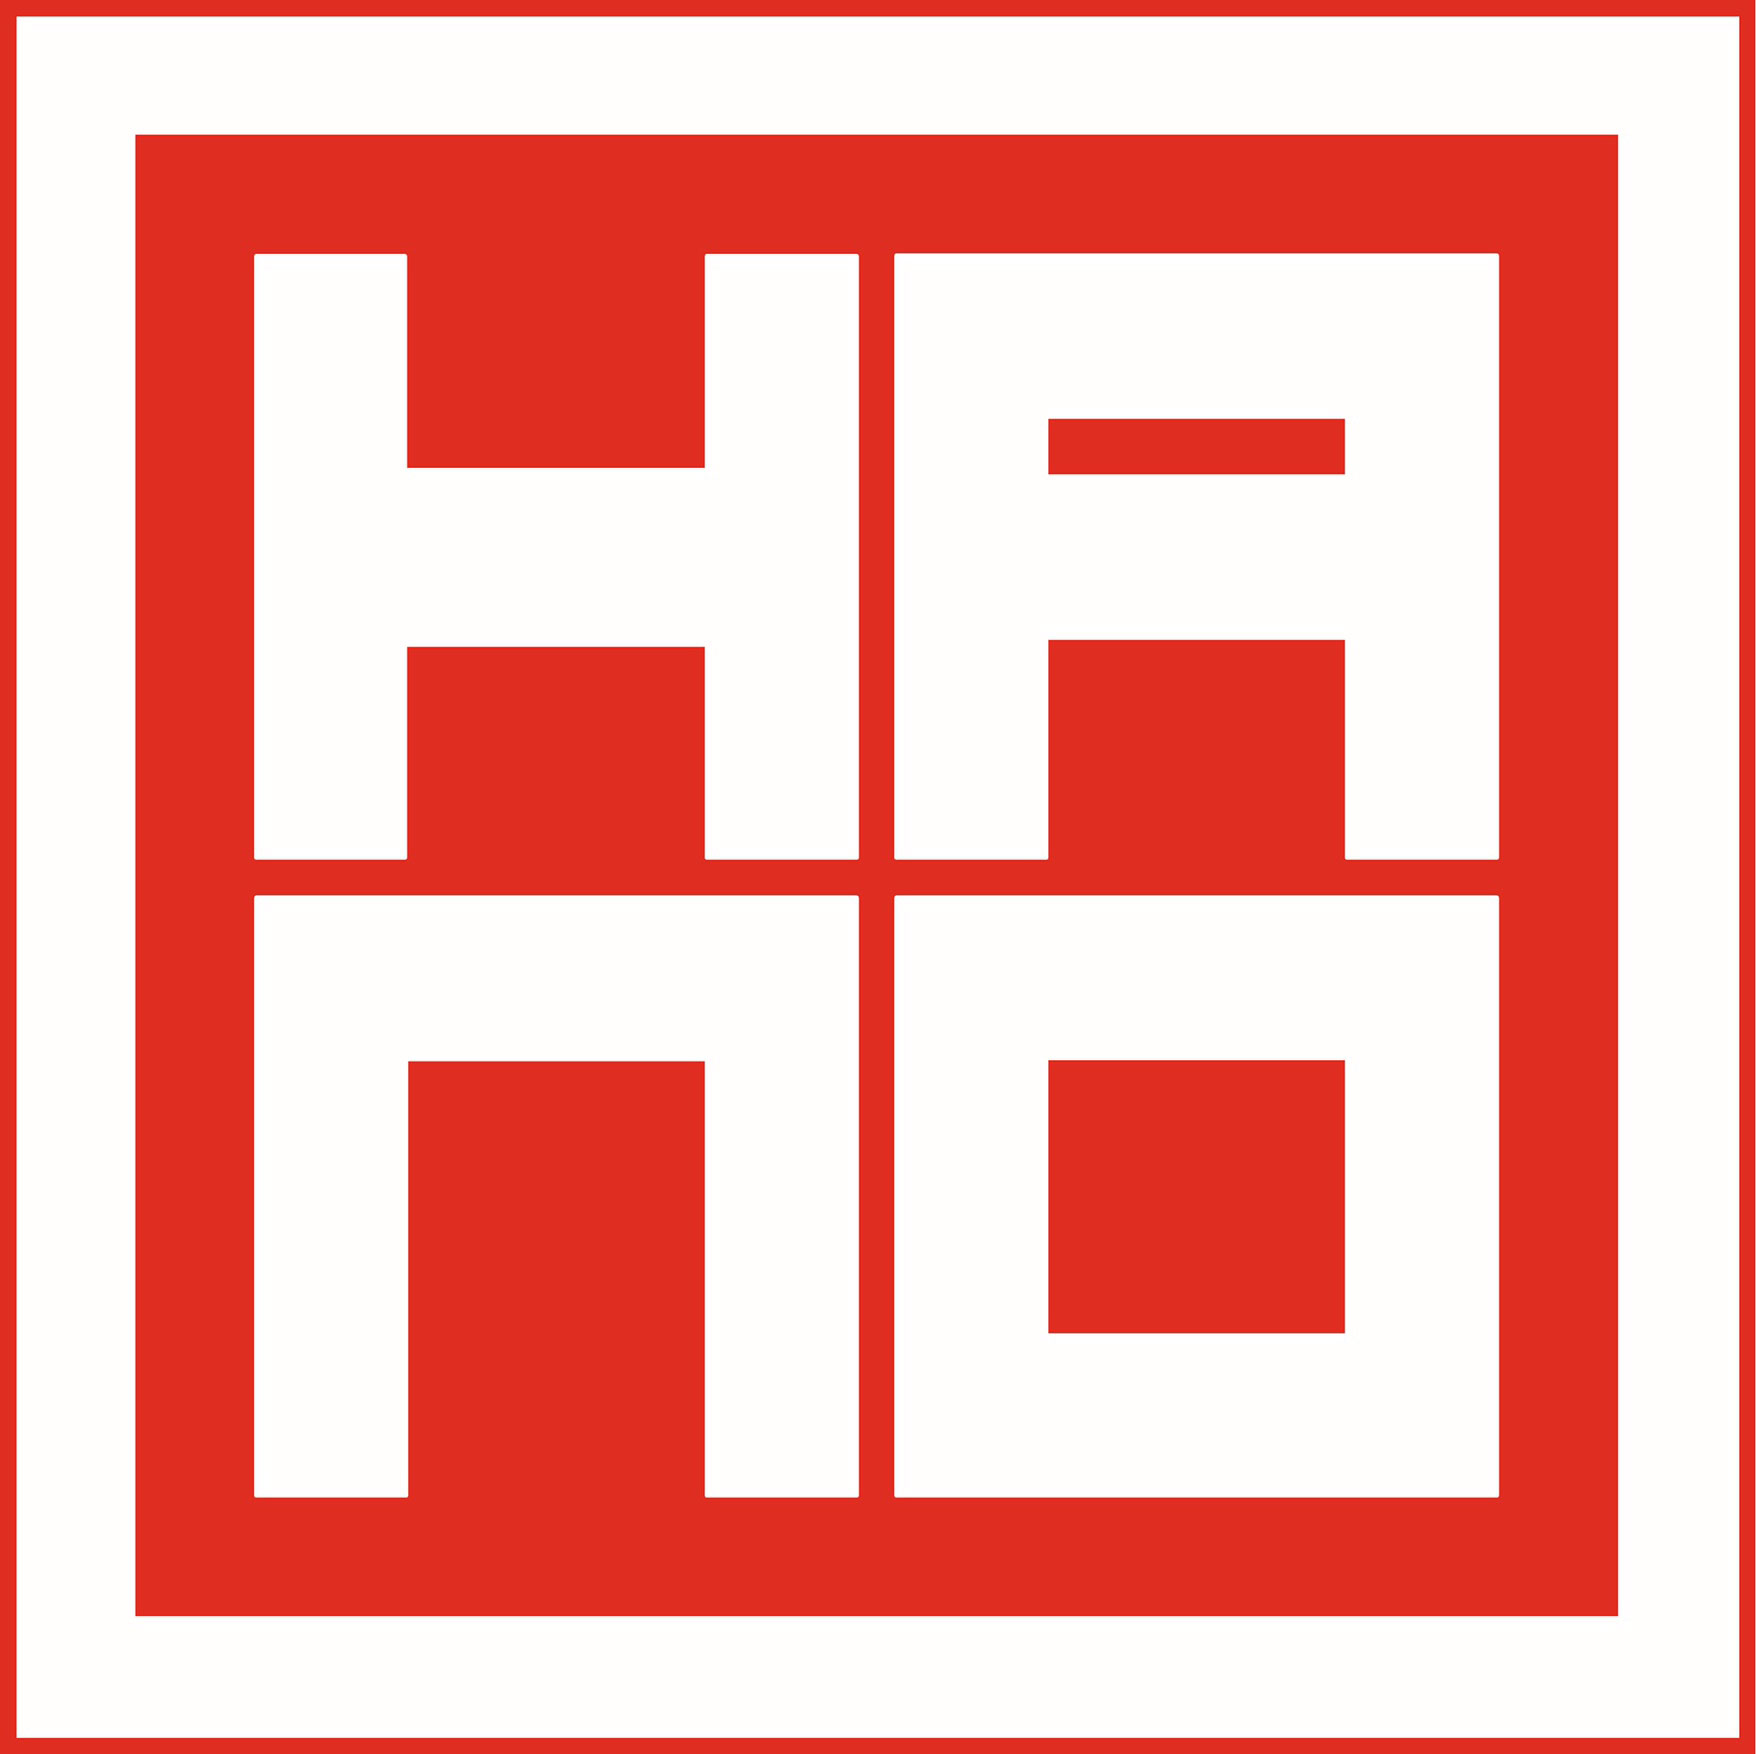 Hano.it - Hip Hop culture